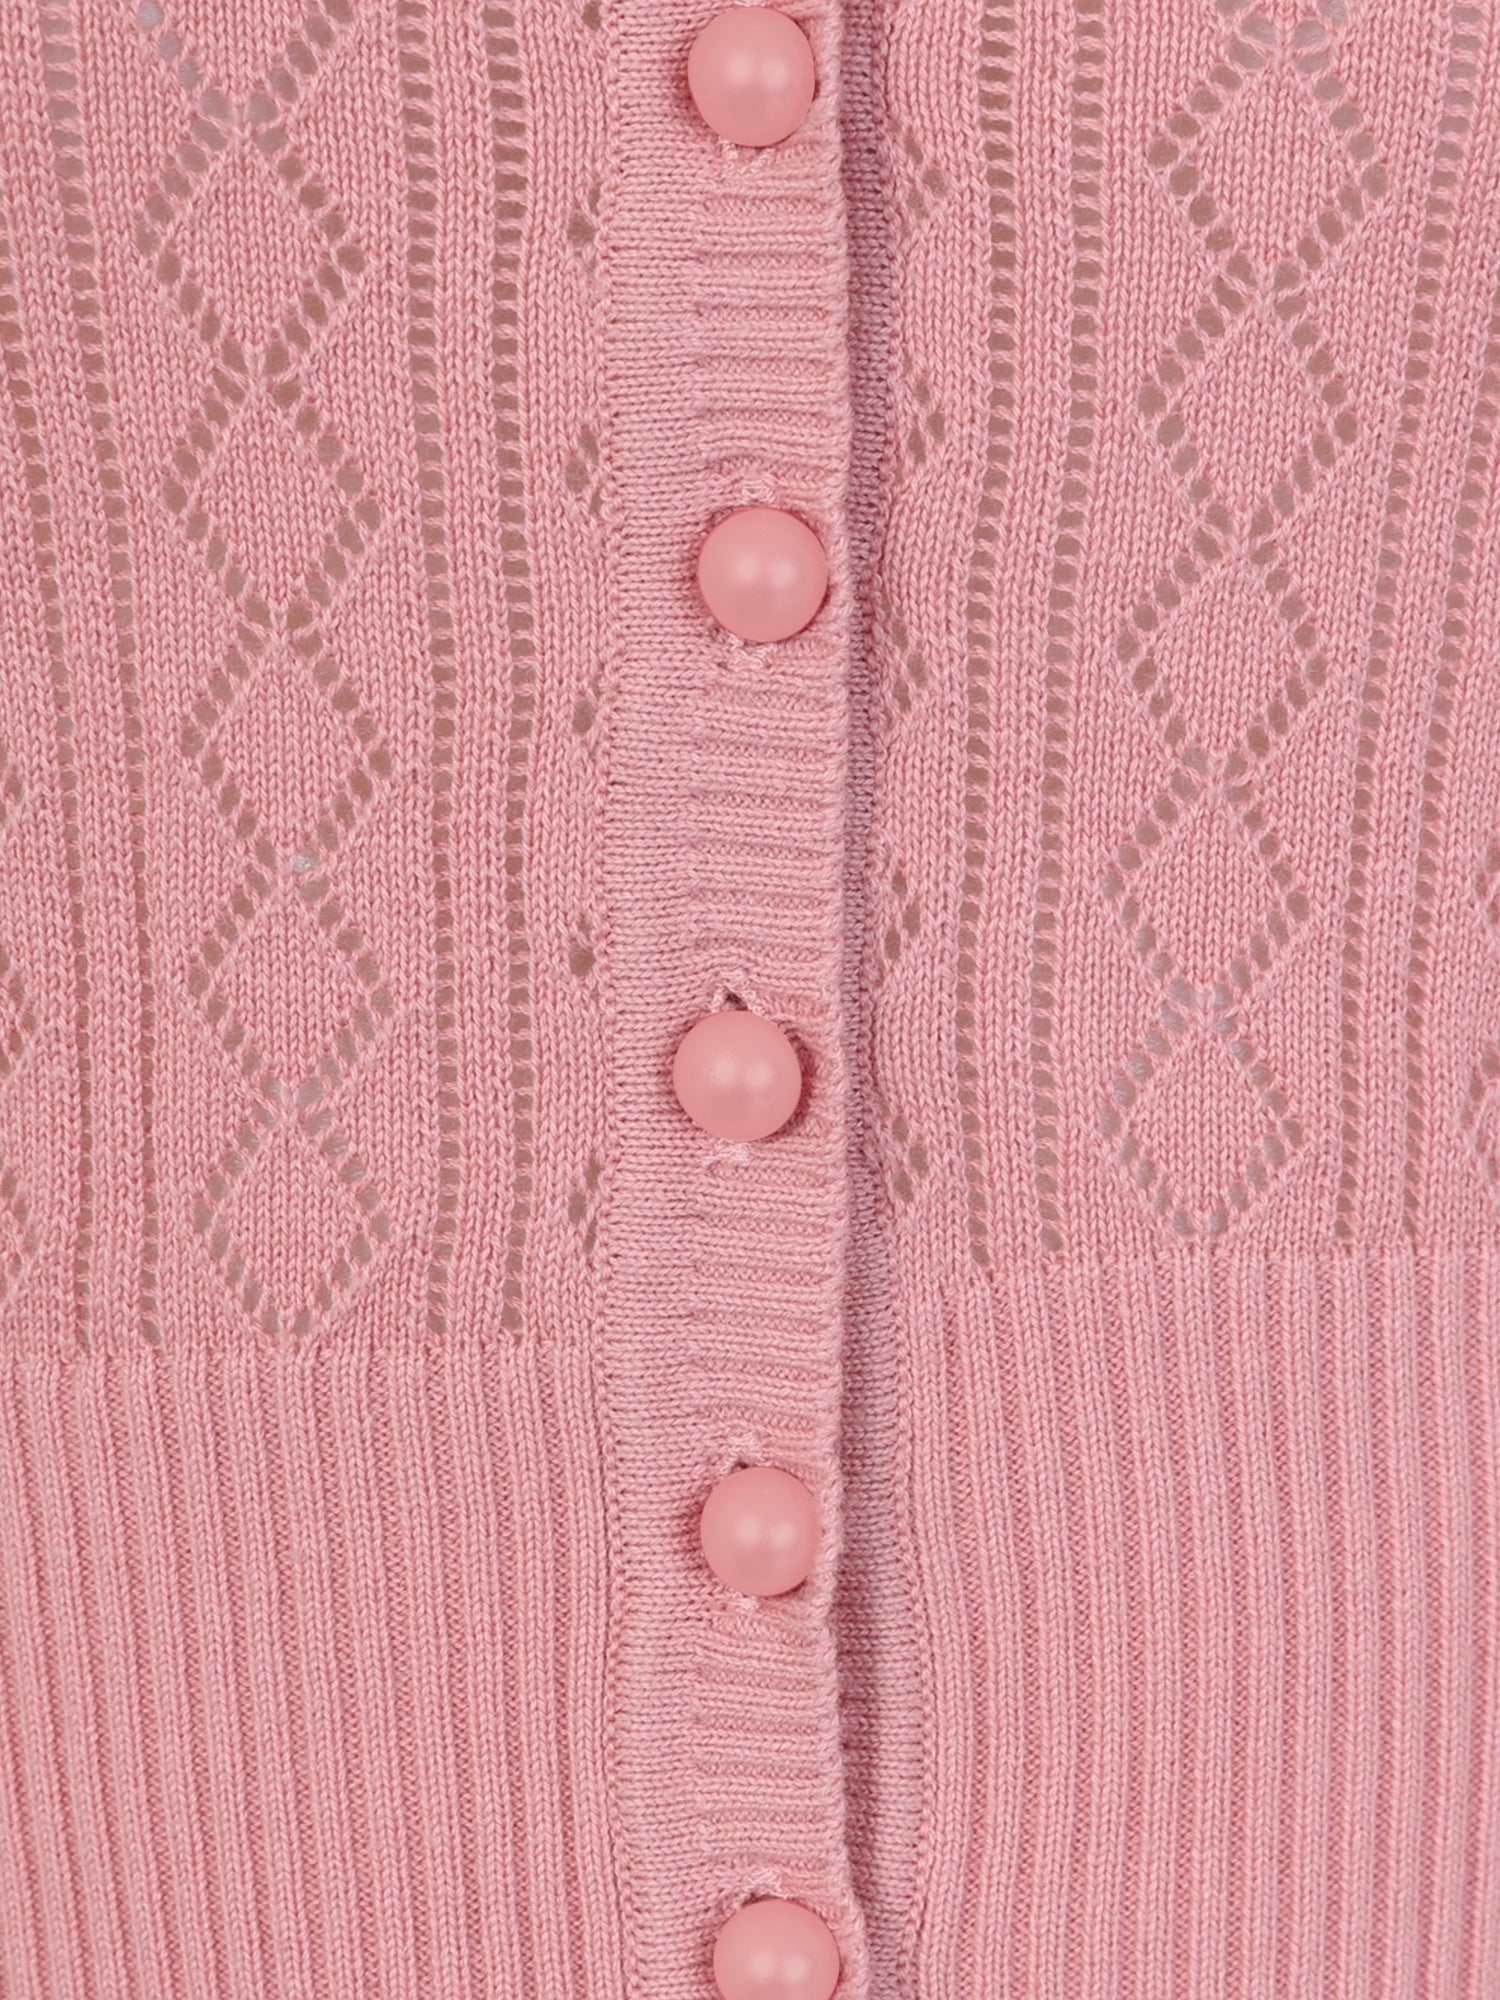 Linda 1940’s Cardigan - pink - Isabel’s Retro & Vintage Clothing